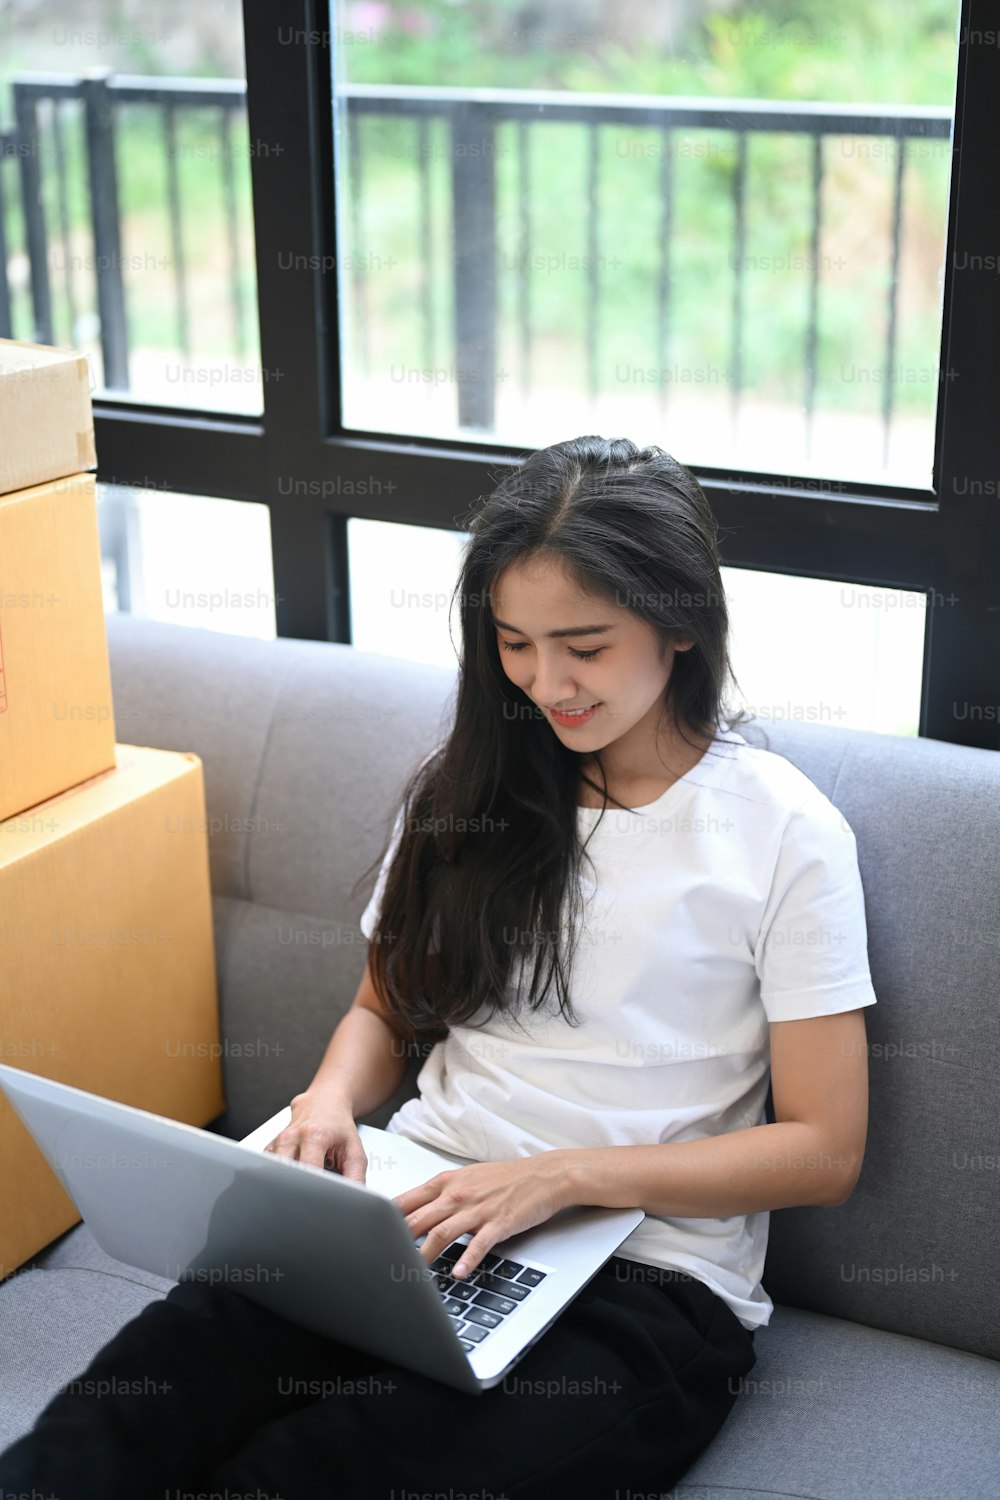 Junge asiatische Unternehmensgründung Online-Verkäufer Besitzer mit Laptop für die Überprüfung der Kundenbestellungen von der Website während des Sitzens auf dem Sofa.